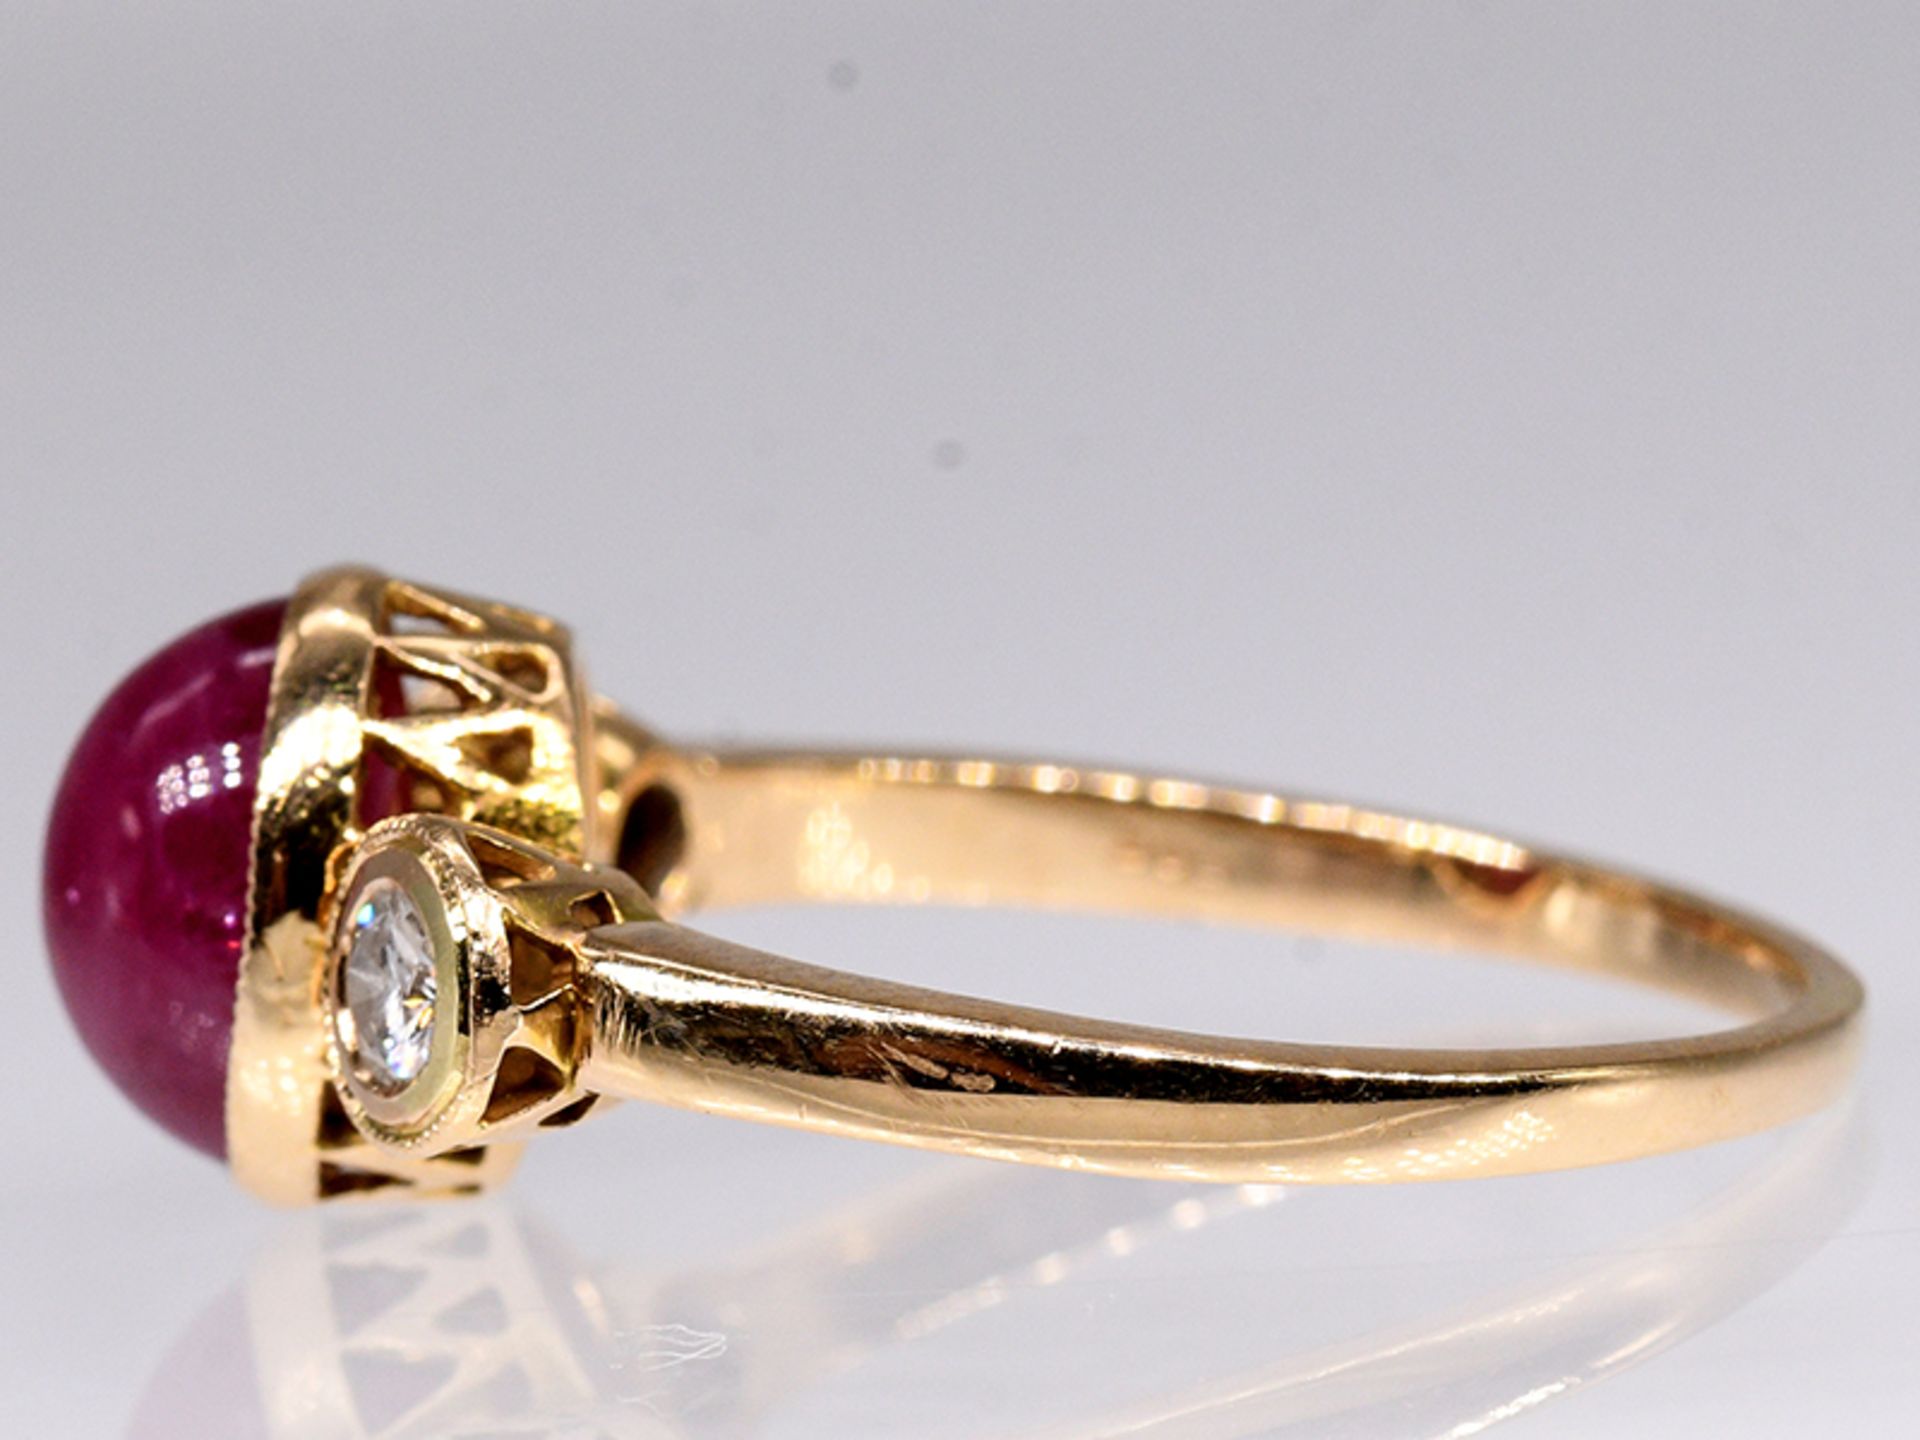 Ring mit Rubin-Cabochon und 2 Brillanten, zus. ca. 0,15 ct, 80- er Jahre. 585/- Gelbgold. - Image 3 of 4